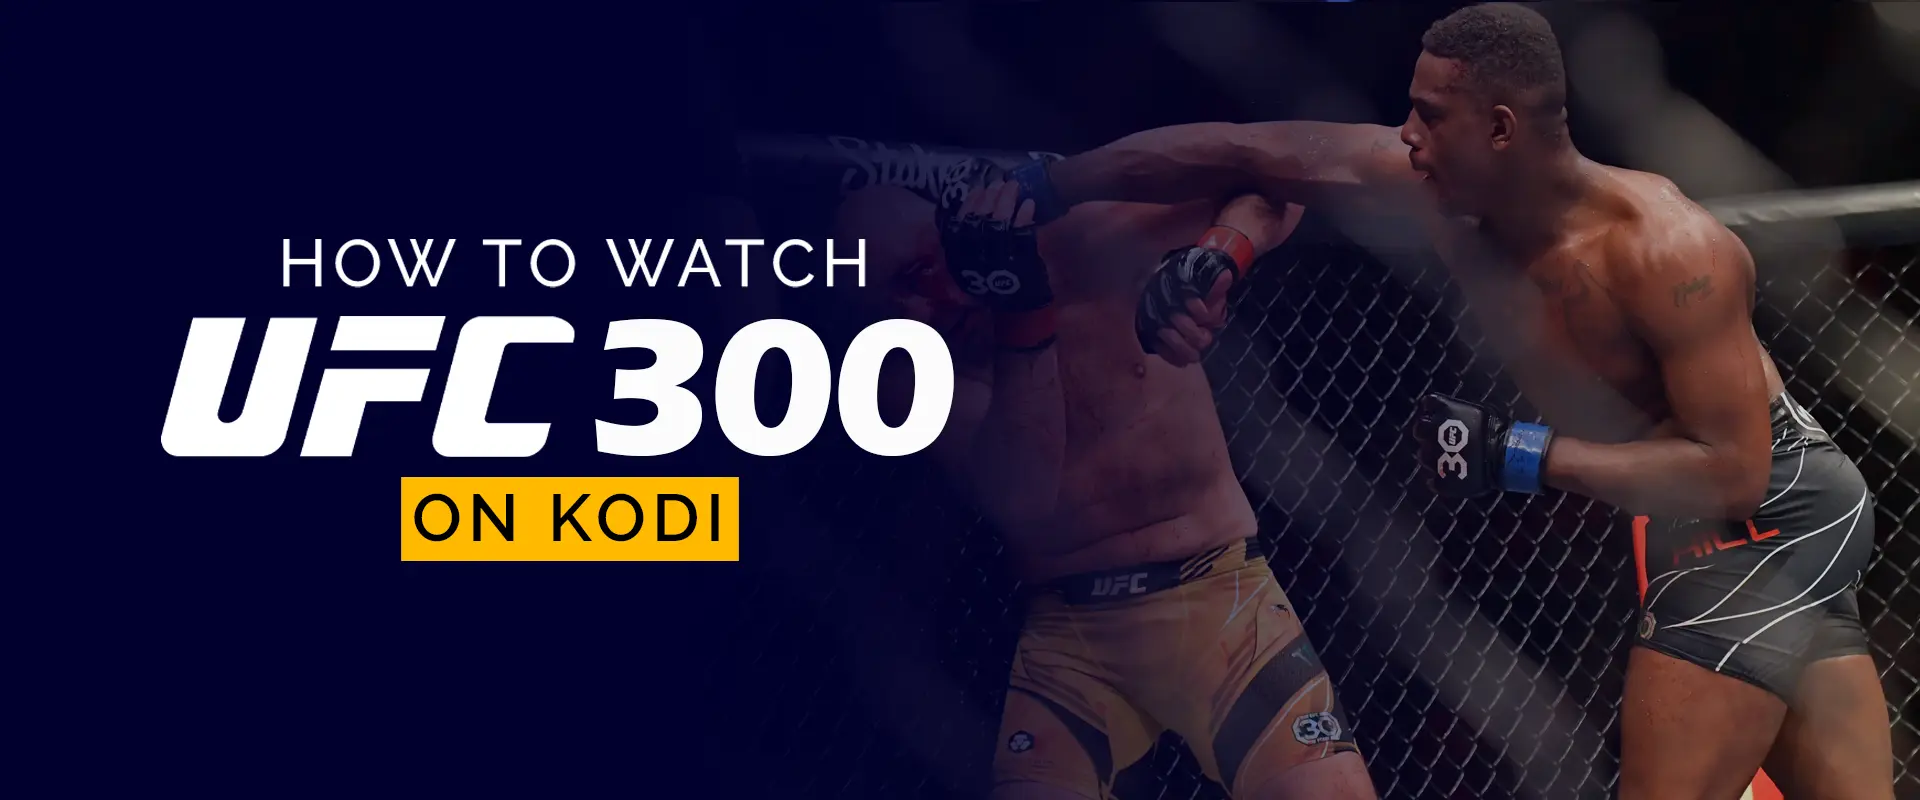 Comment regarder l'UFC 300 sur Kodi